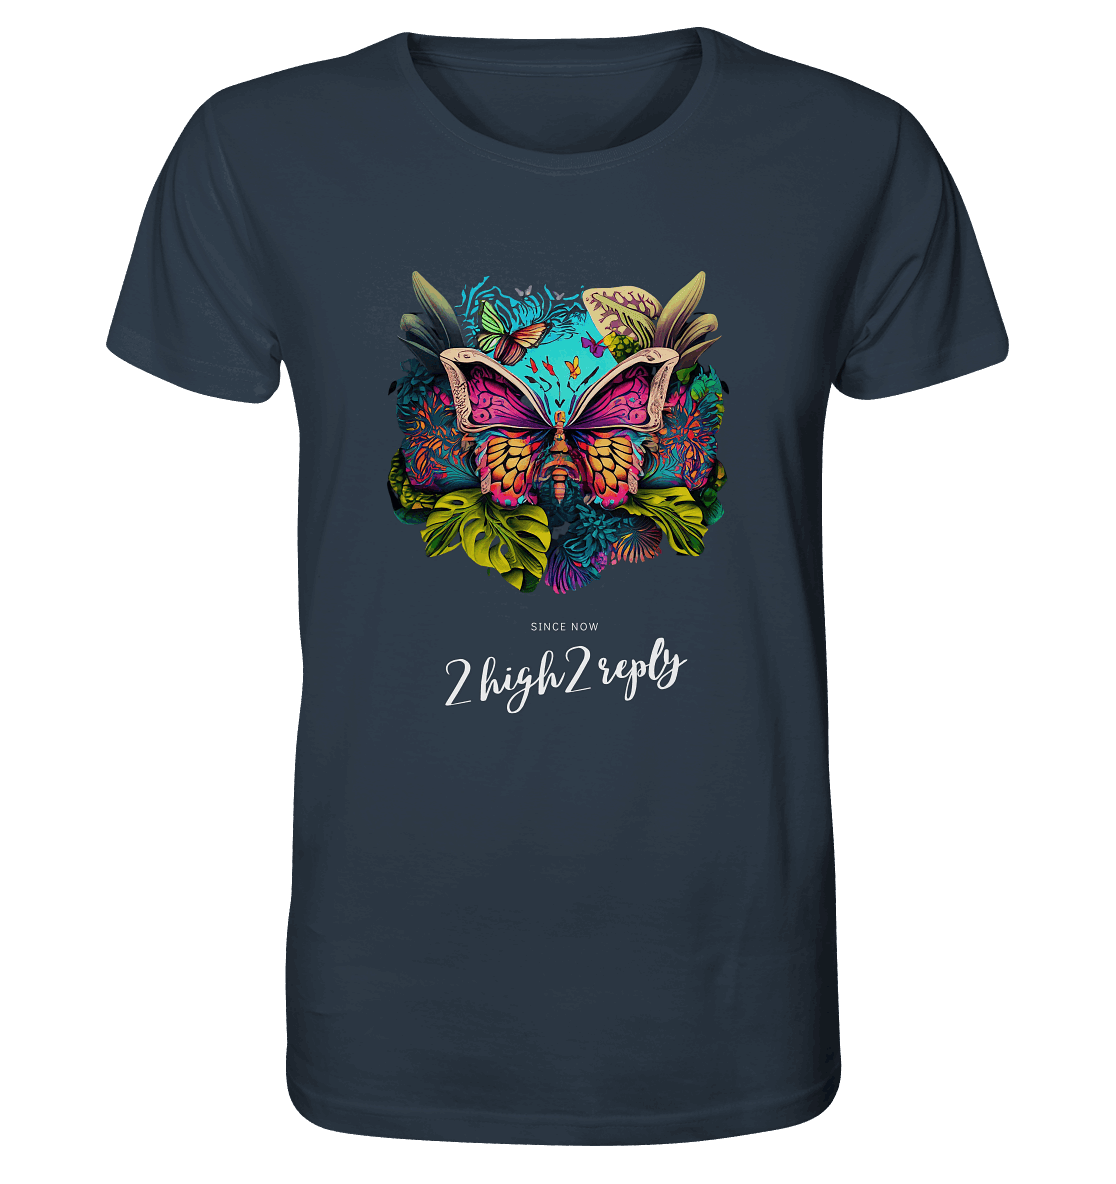 2high2reply / betterfly - Organic Shirt